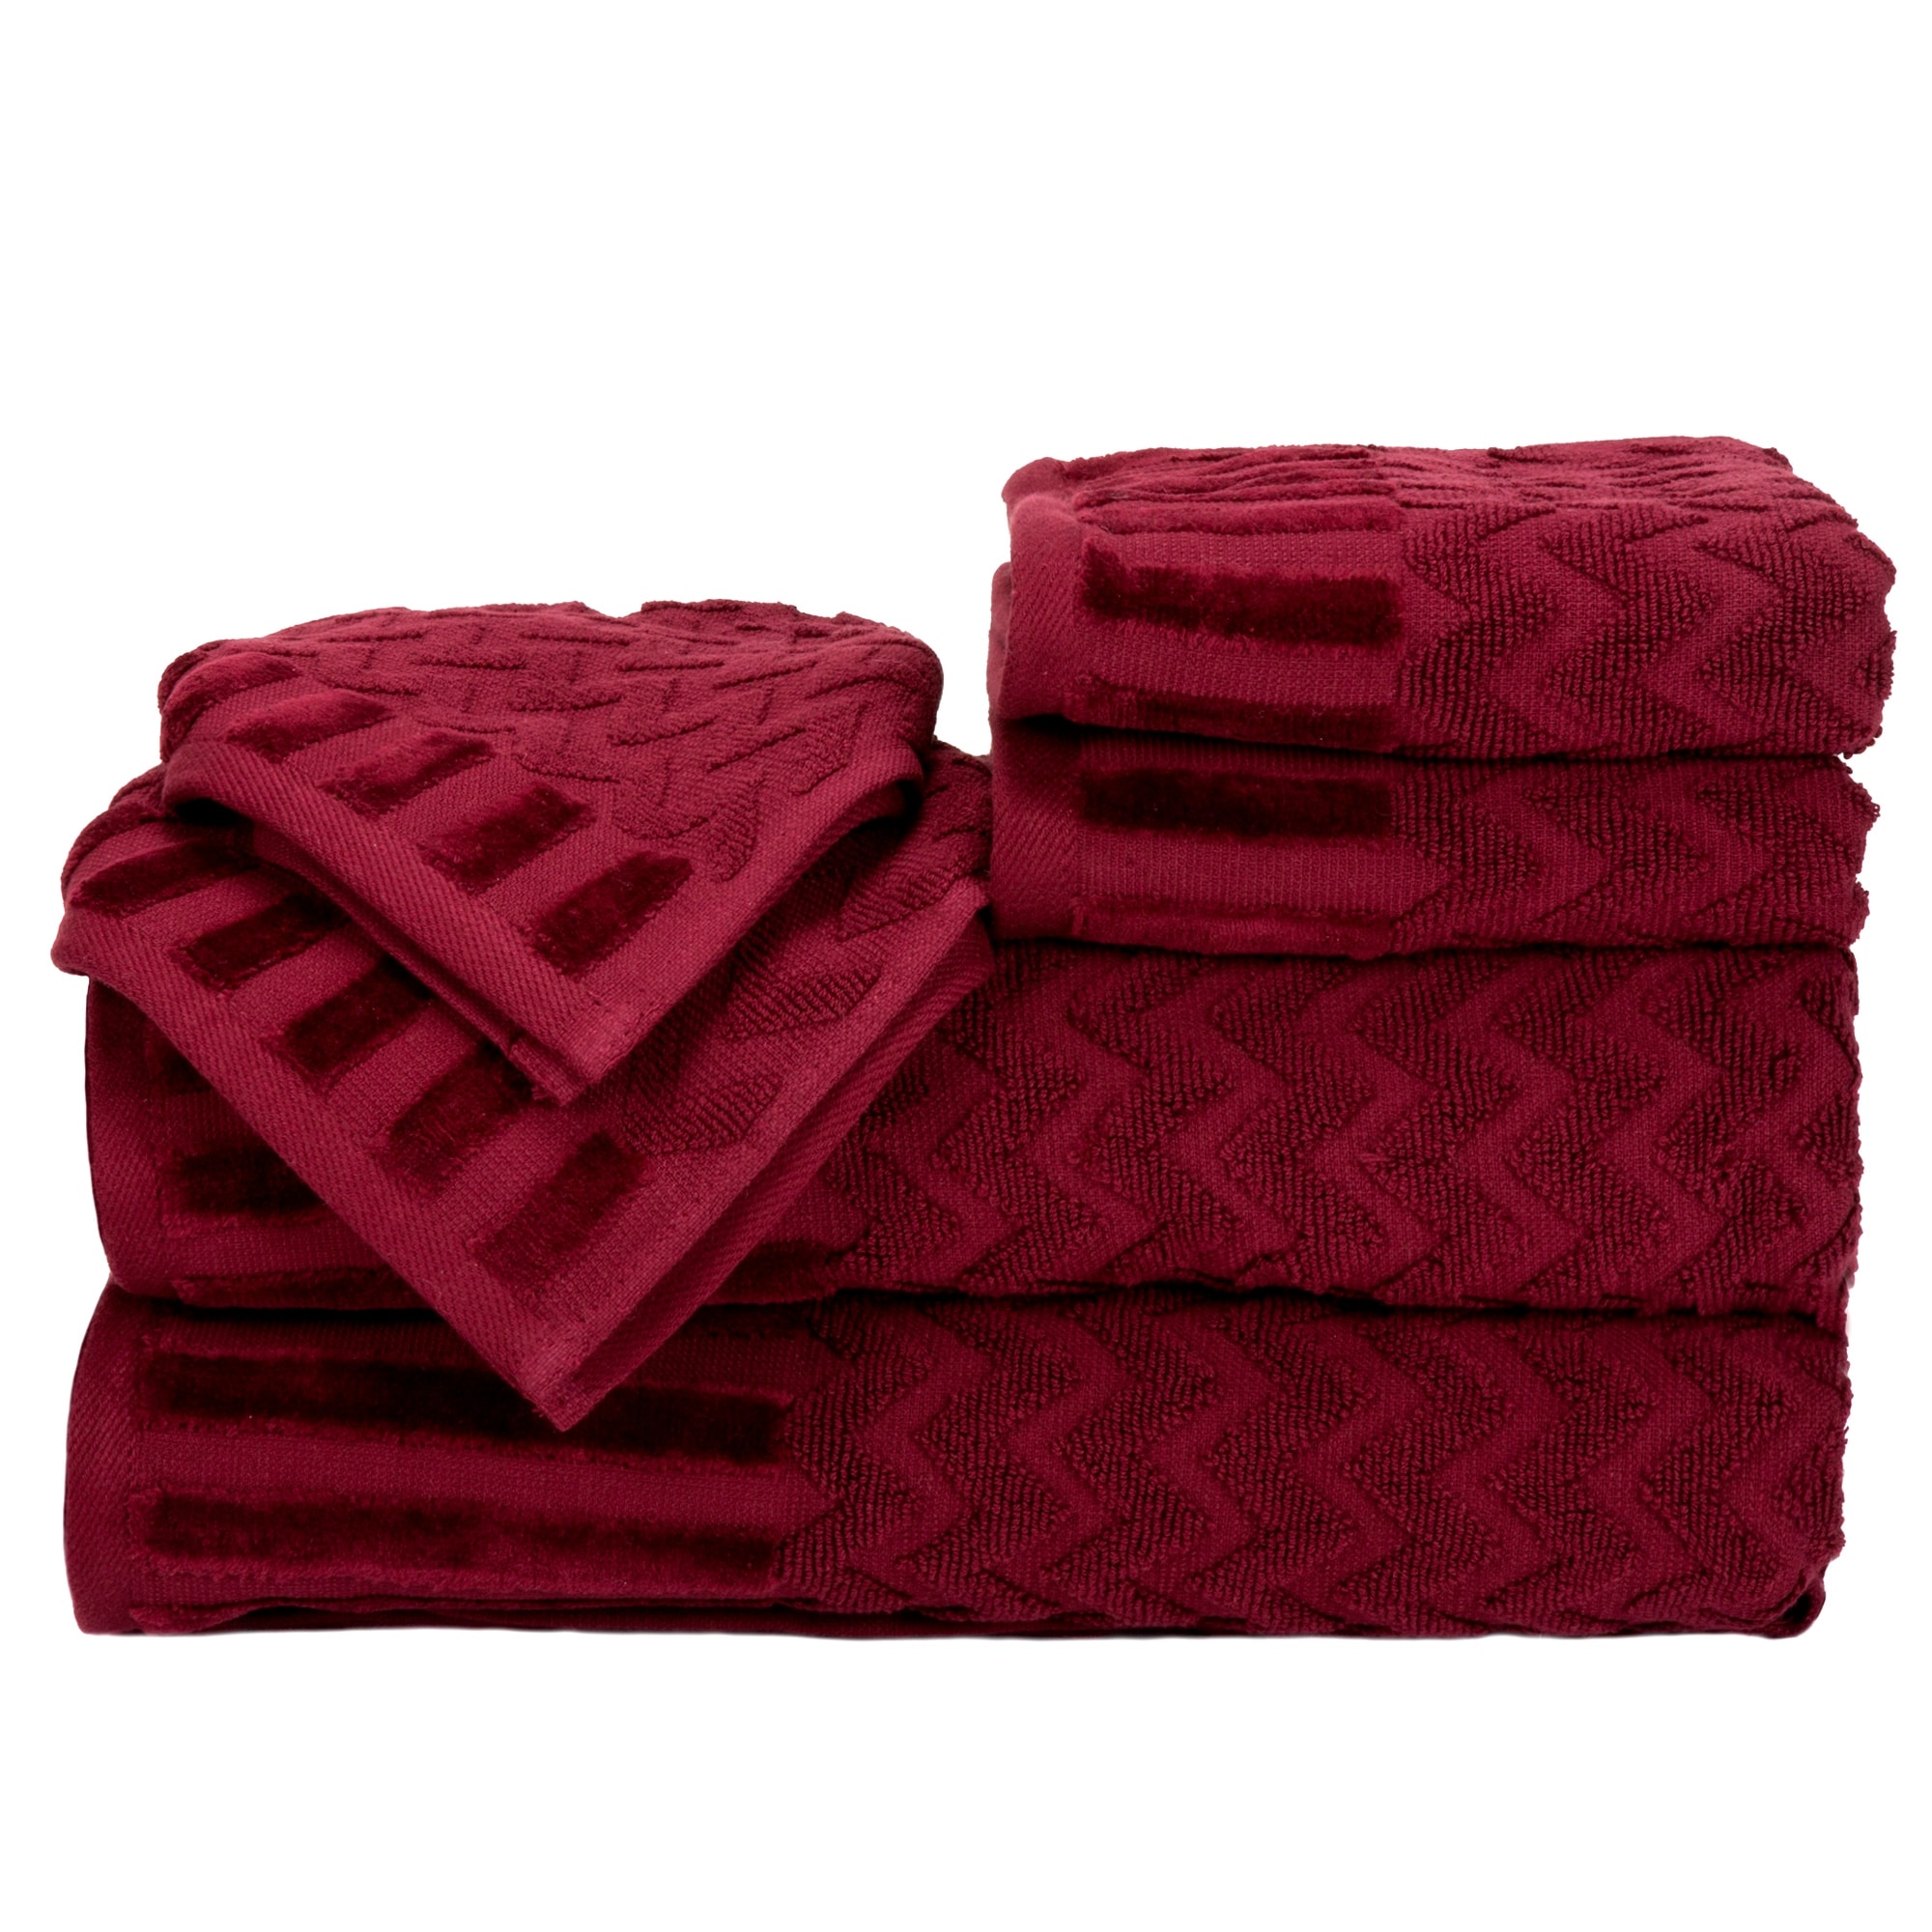 Gracewood Hollow Abley Cotton 6-piece Jacquard Towel Set - On Sale